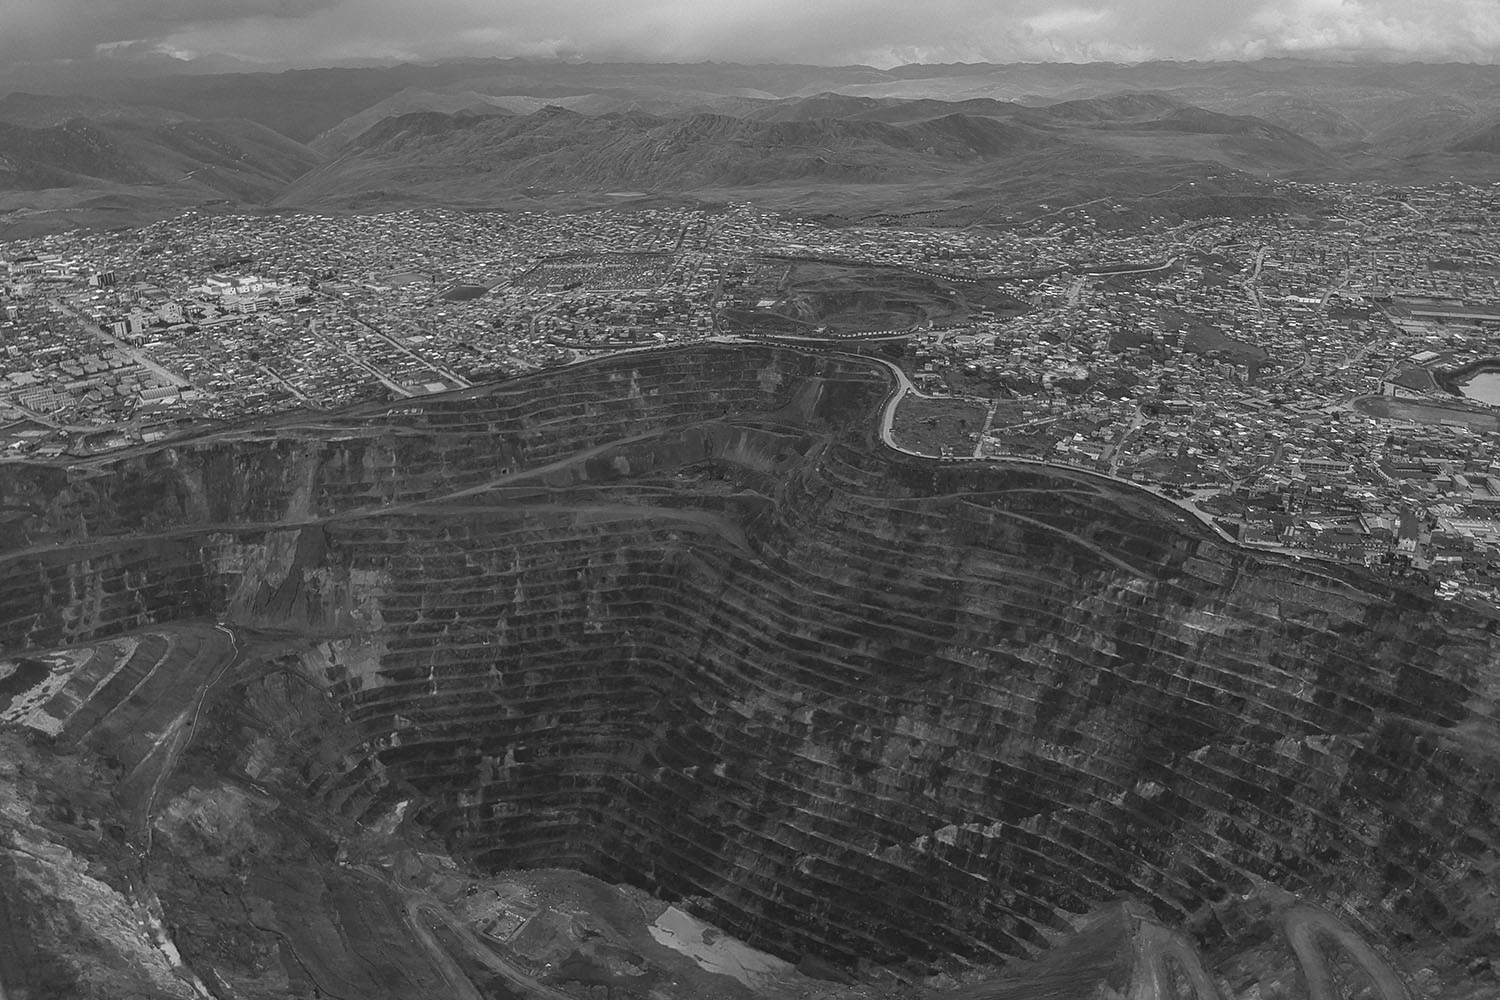 Alessandro Cinque: Perù, a toxic state. Vista aerea di Cerro de Pasco.